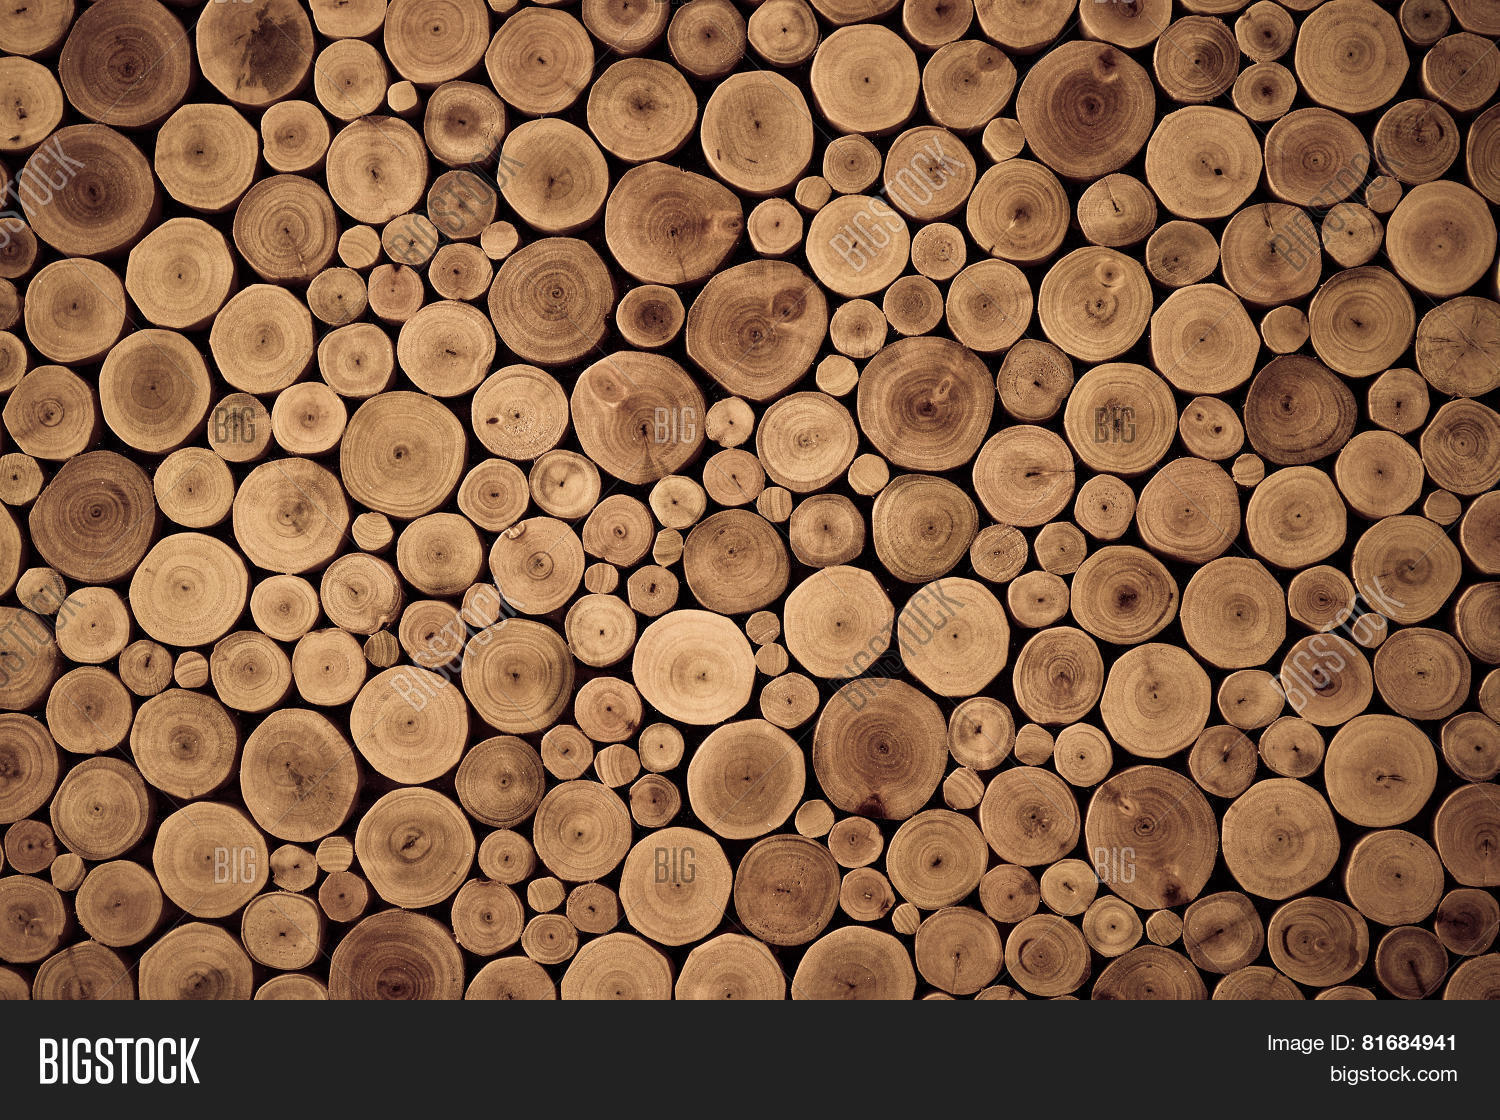 Nền gỗ tròn là sự lựa chọn hoàn hảo cho bất kỳ bức ảnh nào với sự ấm áp và mộc mạc của gỗ. Hãy xem hình ảnh này để trải nghiệm cảm giác tự nhiên tuyệt vời của nền gỗ tròn.